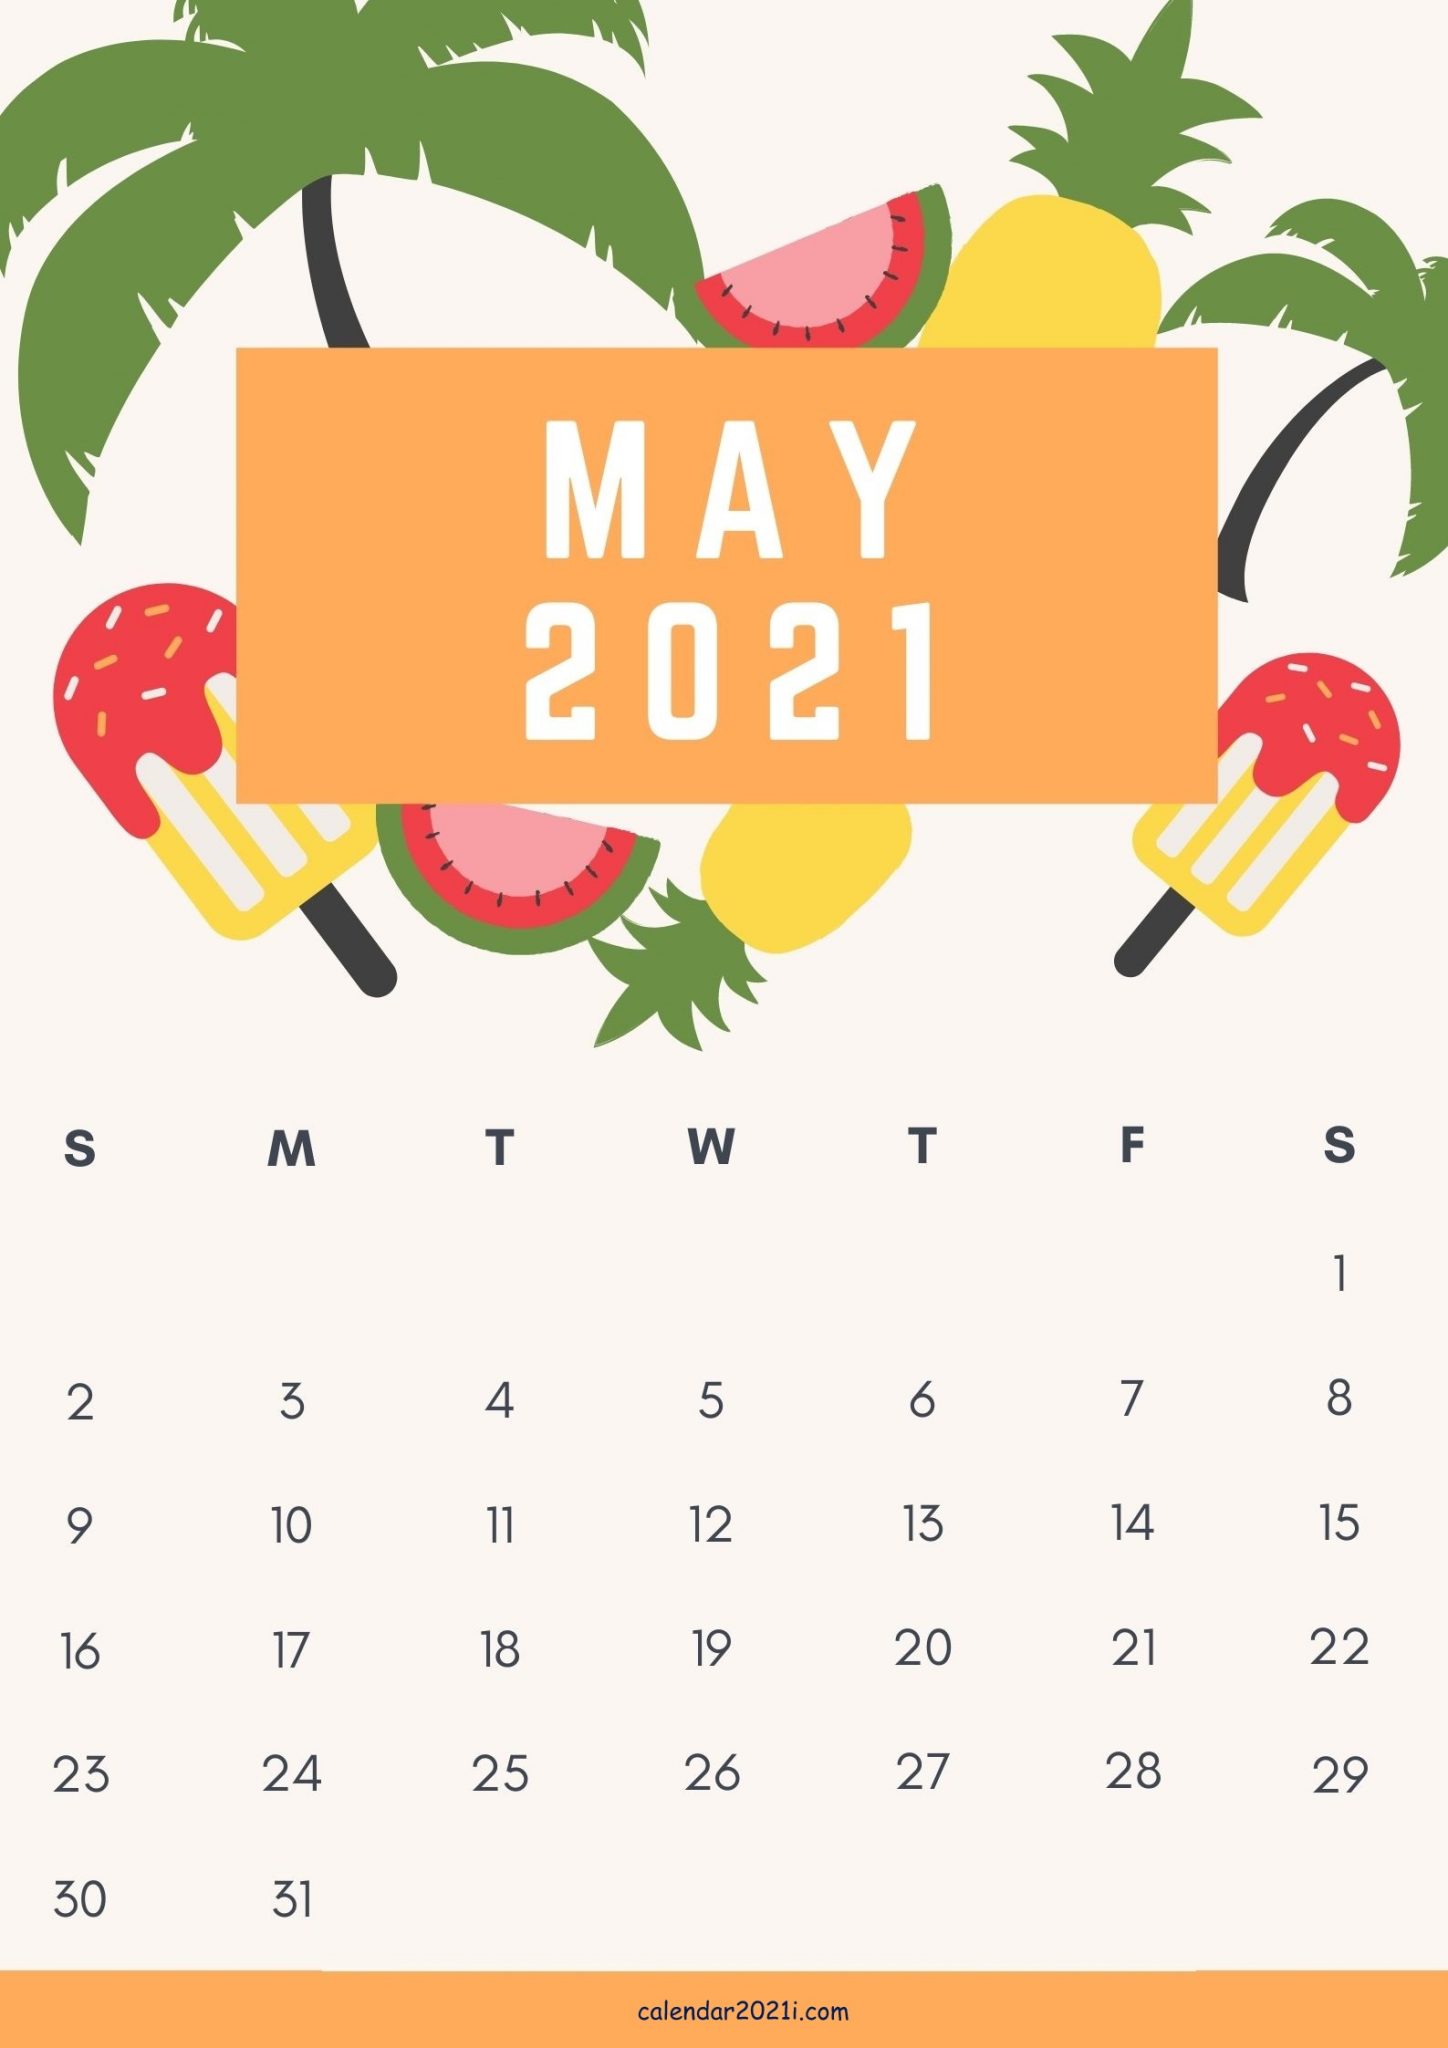 May 2021 Cute Calendar Design